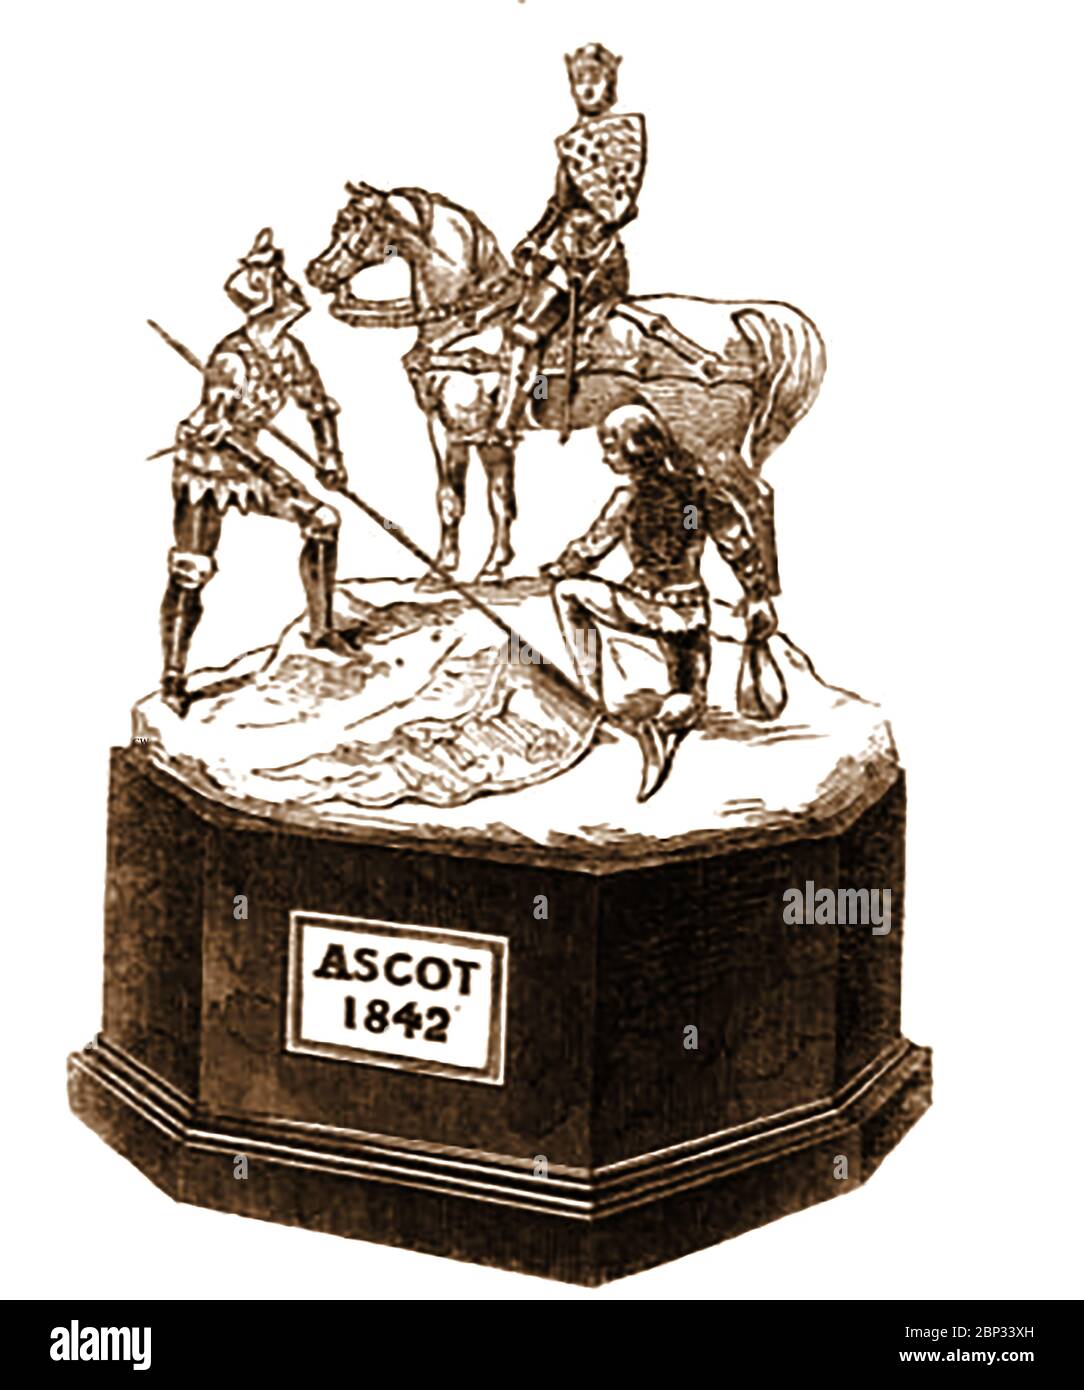 Die erste echte Ascot Goldbecher Trophäe, entworfen und hergestellt vom Haus Garrard im Jahr 1842. In diesem Jahr gewann Beeswing (1833–1854) ein britisches Vollblut-Rennpferd aus Nordengland aus dem 19. Jahrhundert, das zu ihrer Zeit als größte Stute Großbritanniens galt und zu den größten aller Zeiten ihr Jockey war D Cartwright (Besitzer William Orde). Die Veranstaltung wurde 1807 gegründet. Stockfoto